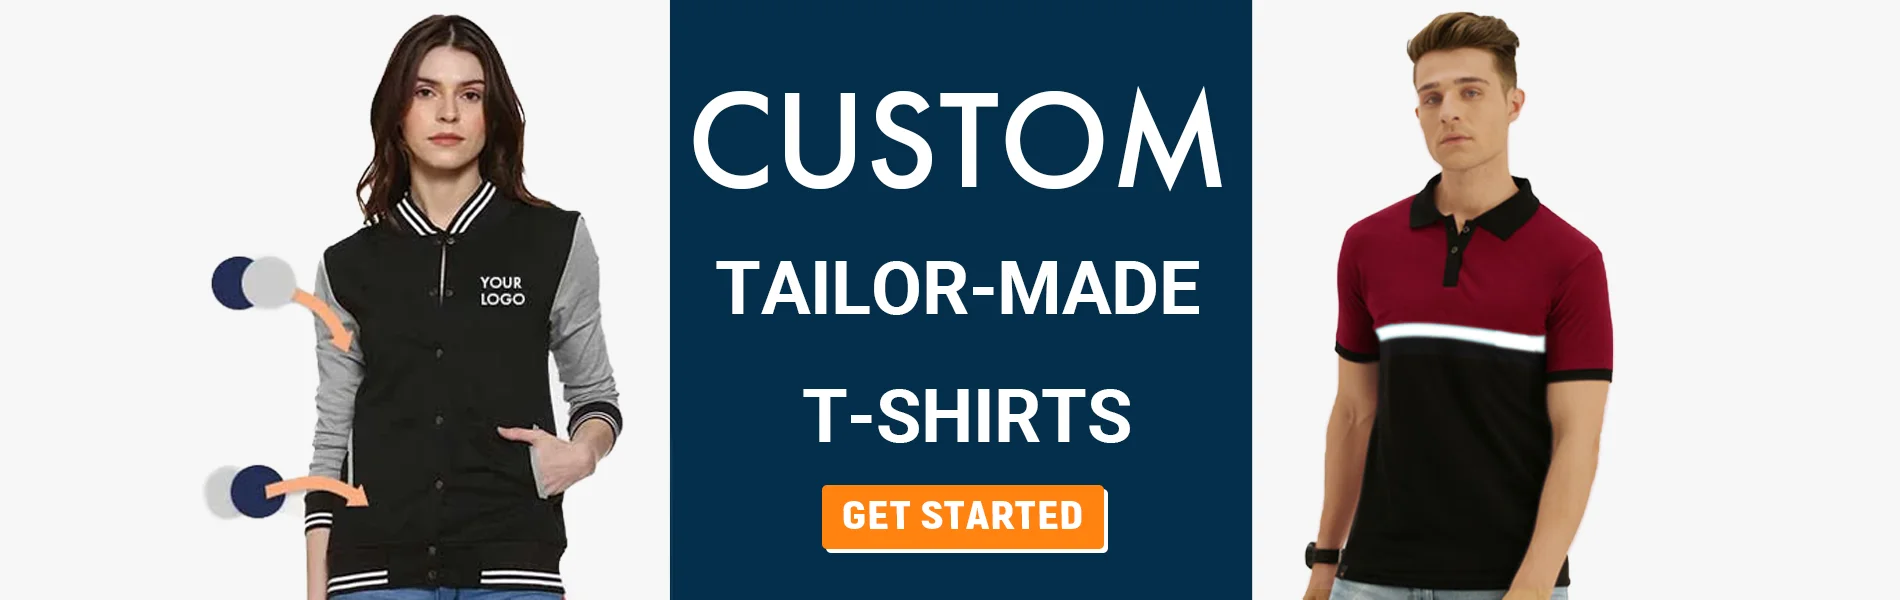 custom tailormade t-shirts coimbatore